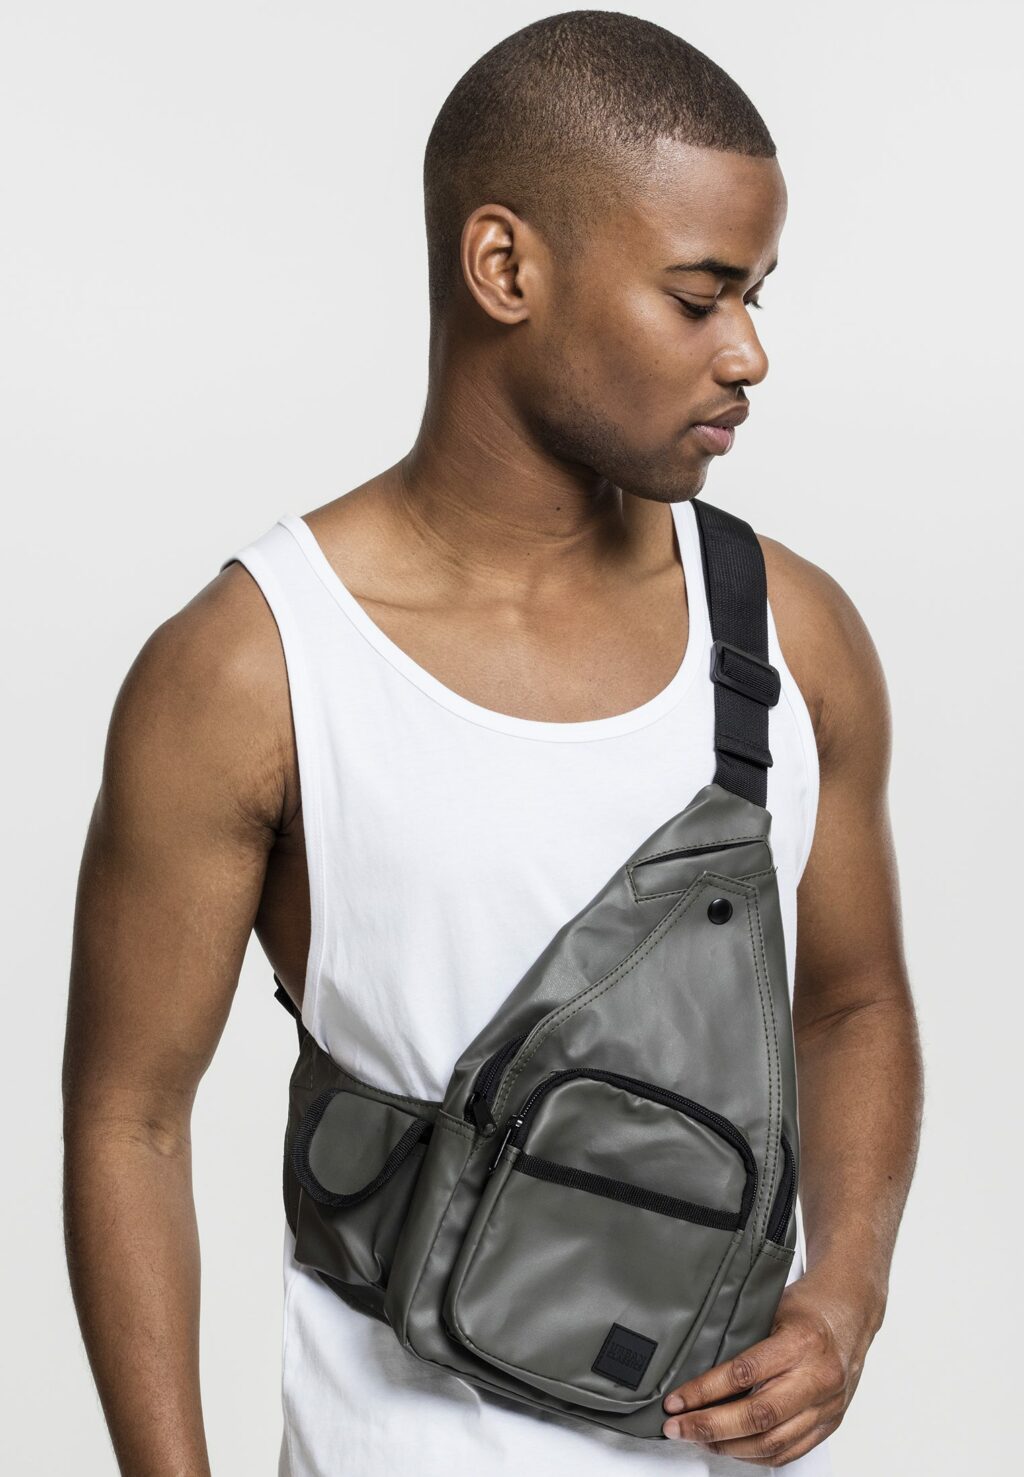 Multi Pocket Shoulder Bag olive/black one TB1694